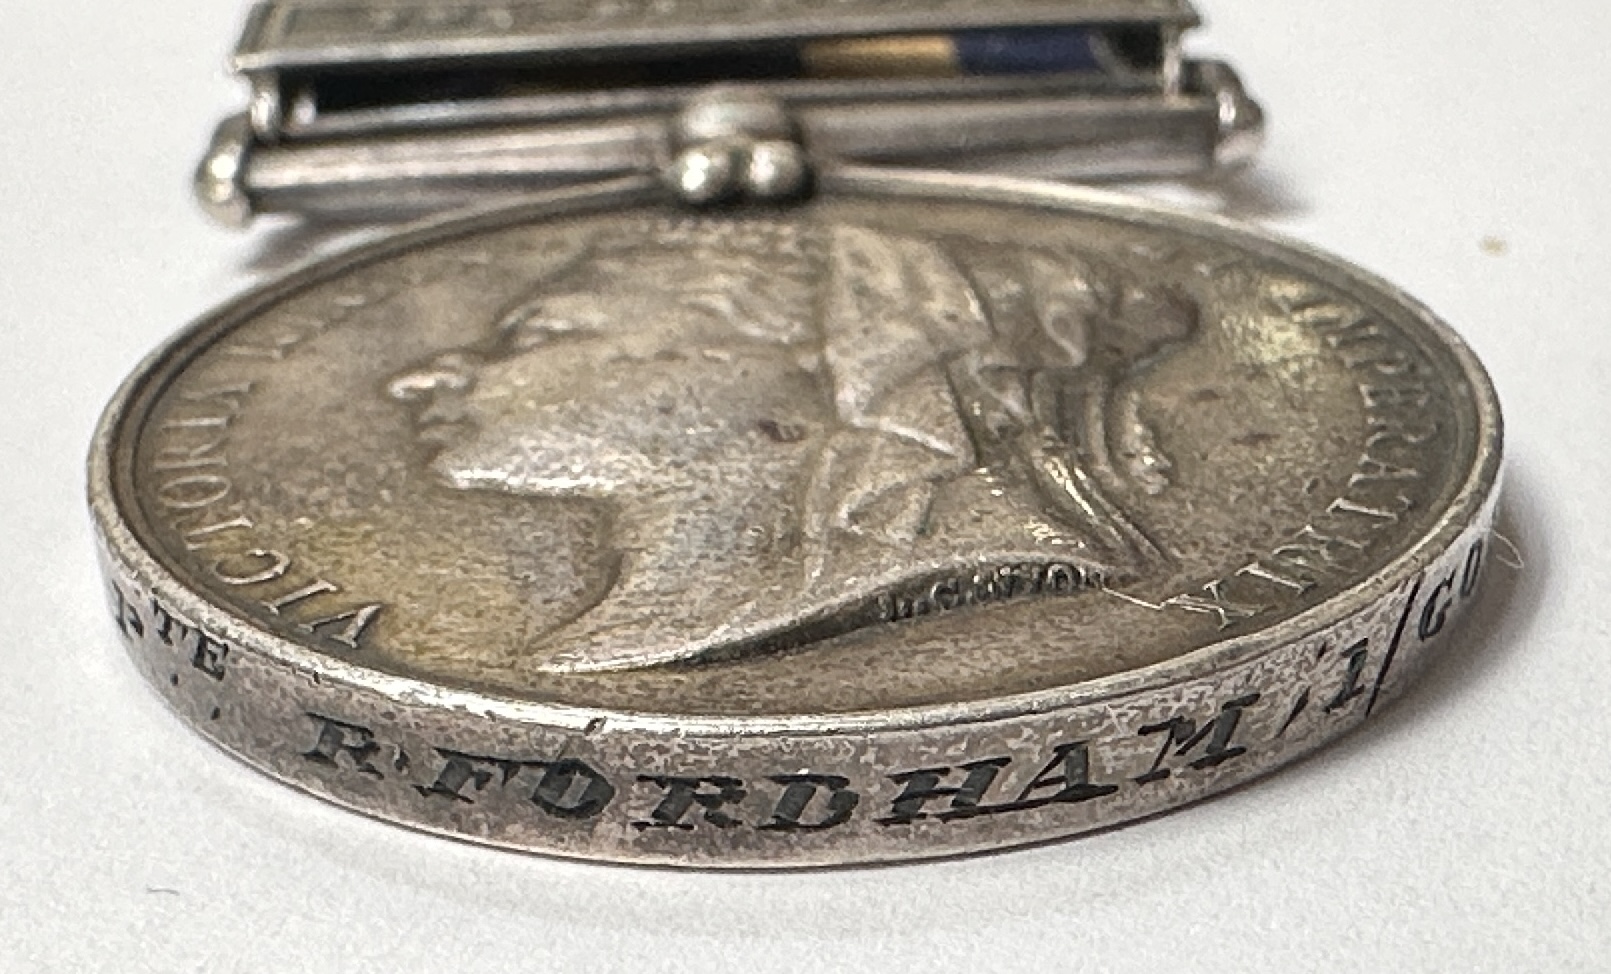 A Queen Victoria Egypt 1882 Medal with five Clasps for TEL-EL-KEBIR, SUAKIN 1884, EL-TEB-TAMAAI, THE - Bild 4 aus 4